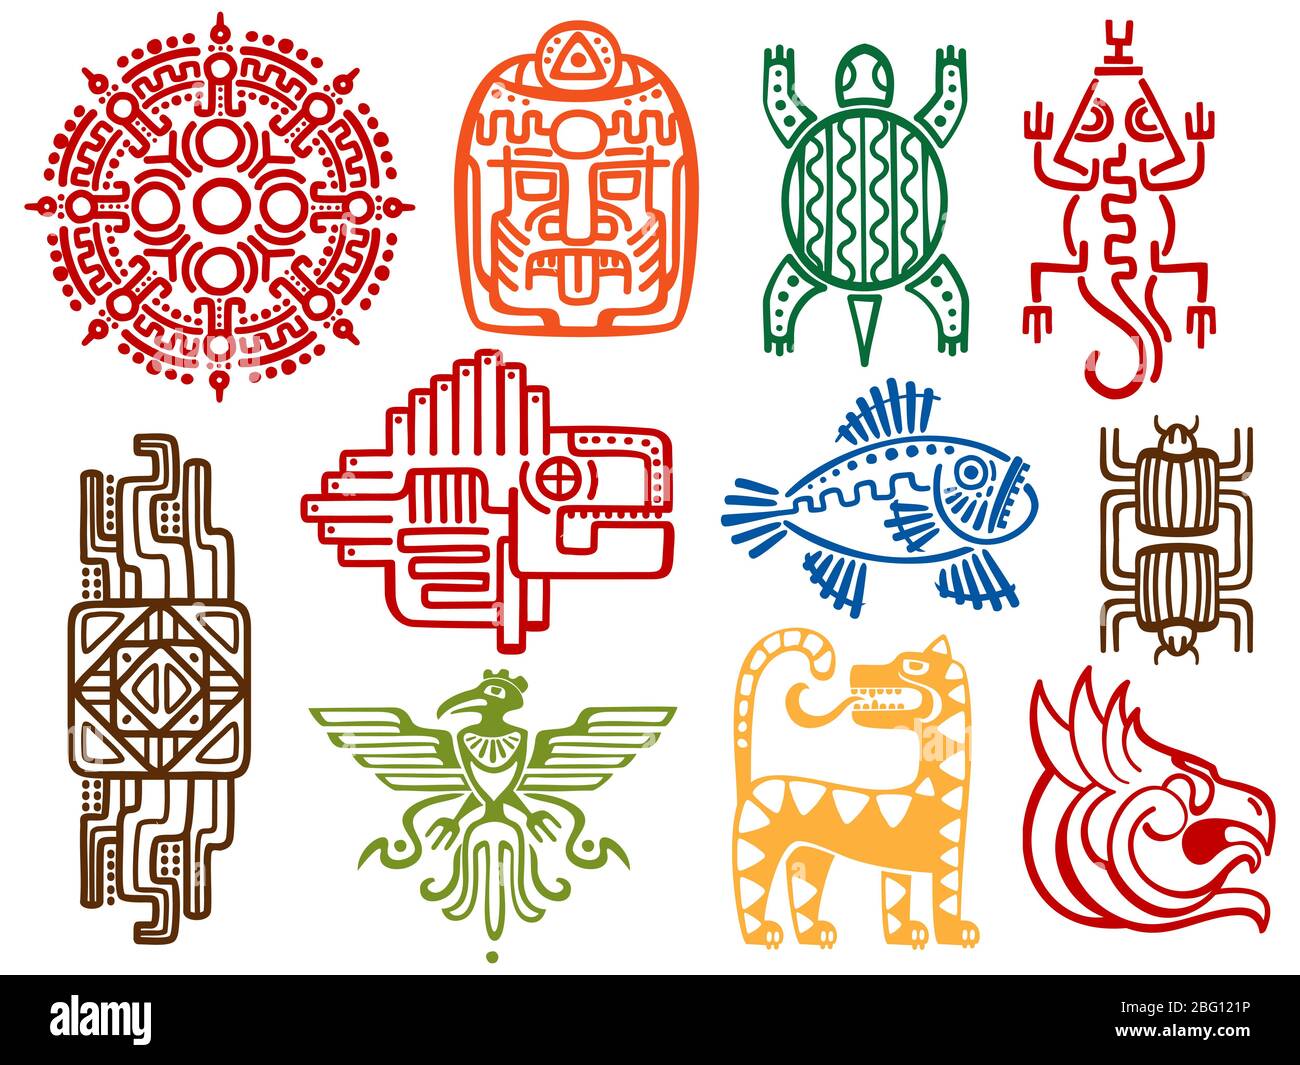 Anciens symboles colorés mexicains vectoriels mythologie isolés sur fond blanc - aztec américain, totem indigène de la culture maya. Illustration vectorielle Illustration de Vecteur